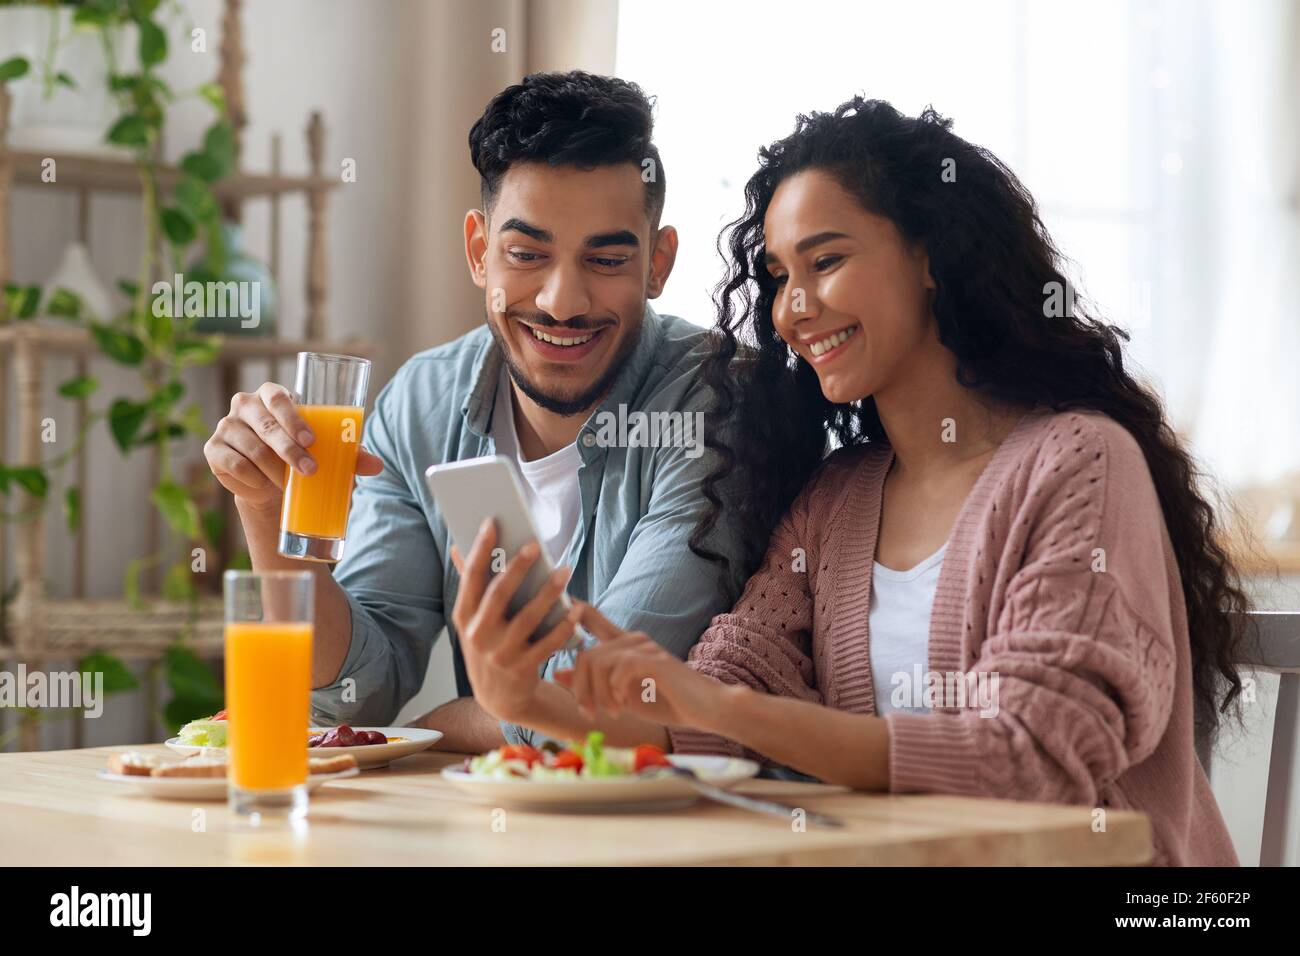 Nahöstliches Paar, das beim Frühstück Fotos auf dem Smartphone ansieht In der Küche Stockfoto